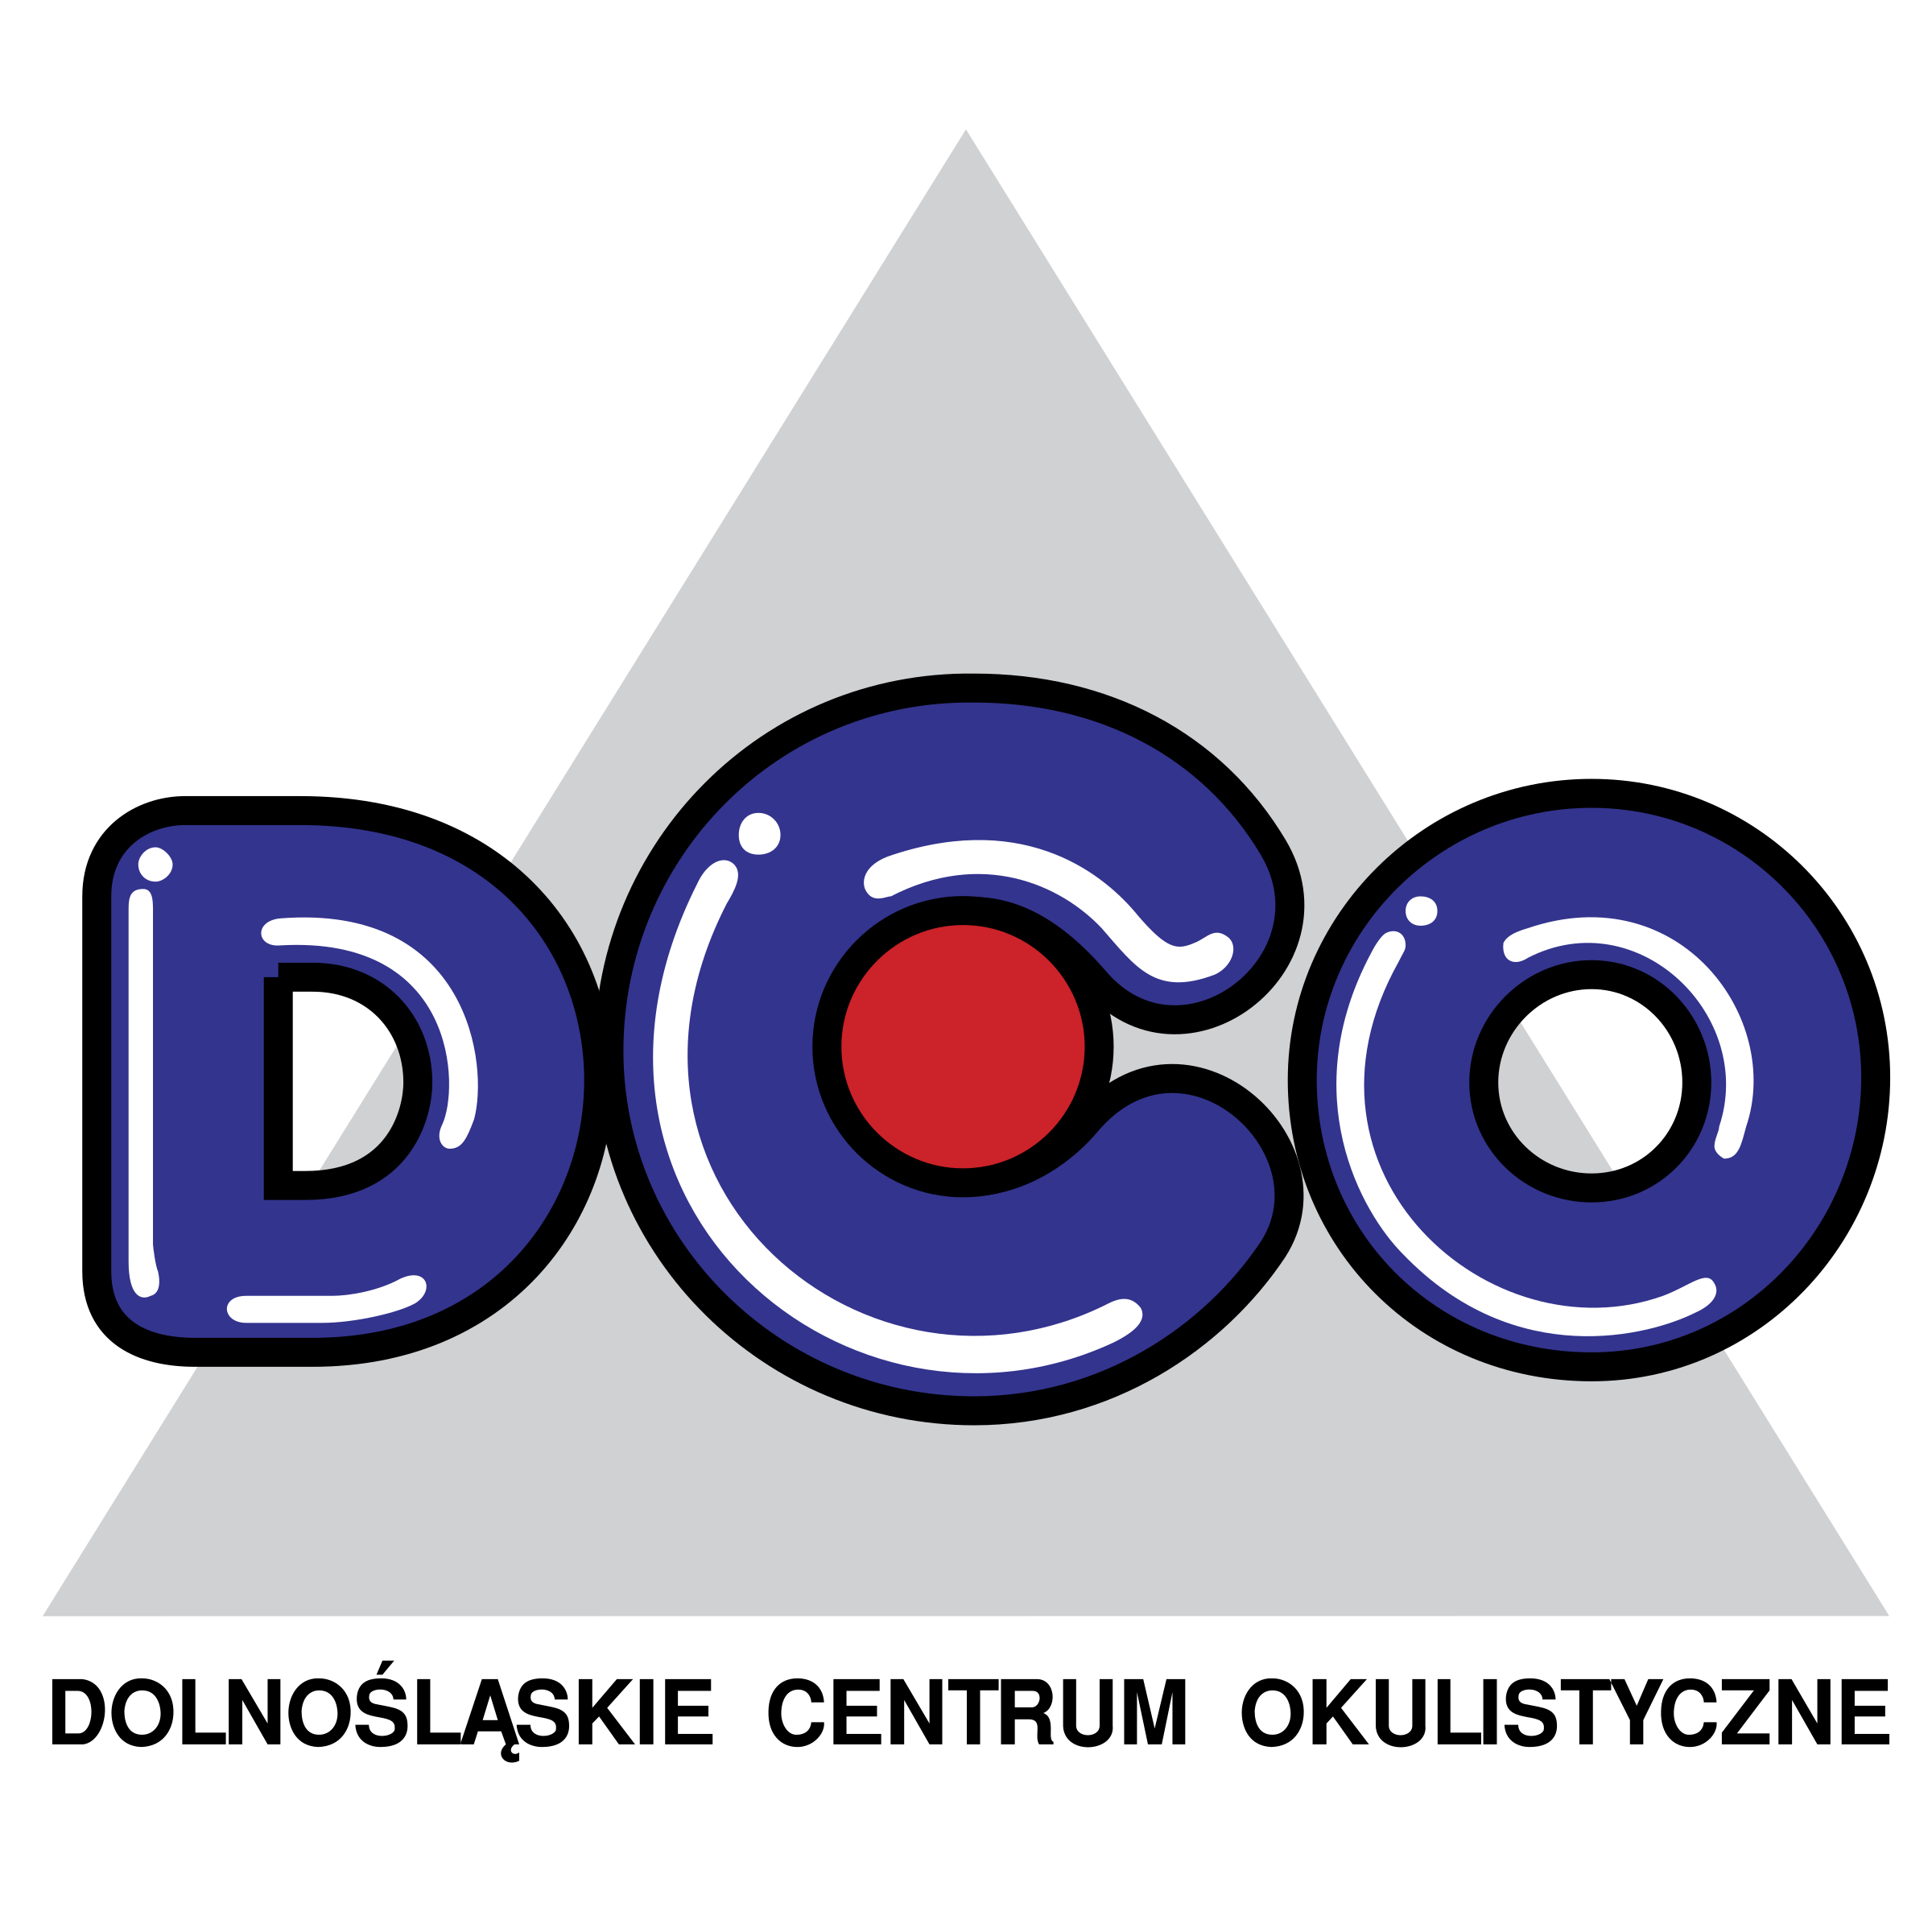 DCO Logo - DCO Logo PNG Transparent & SVG Vector - Freebie Supply